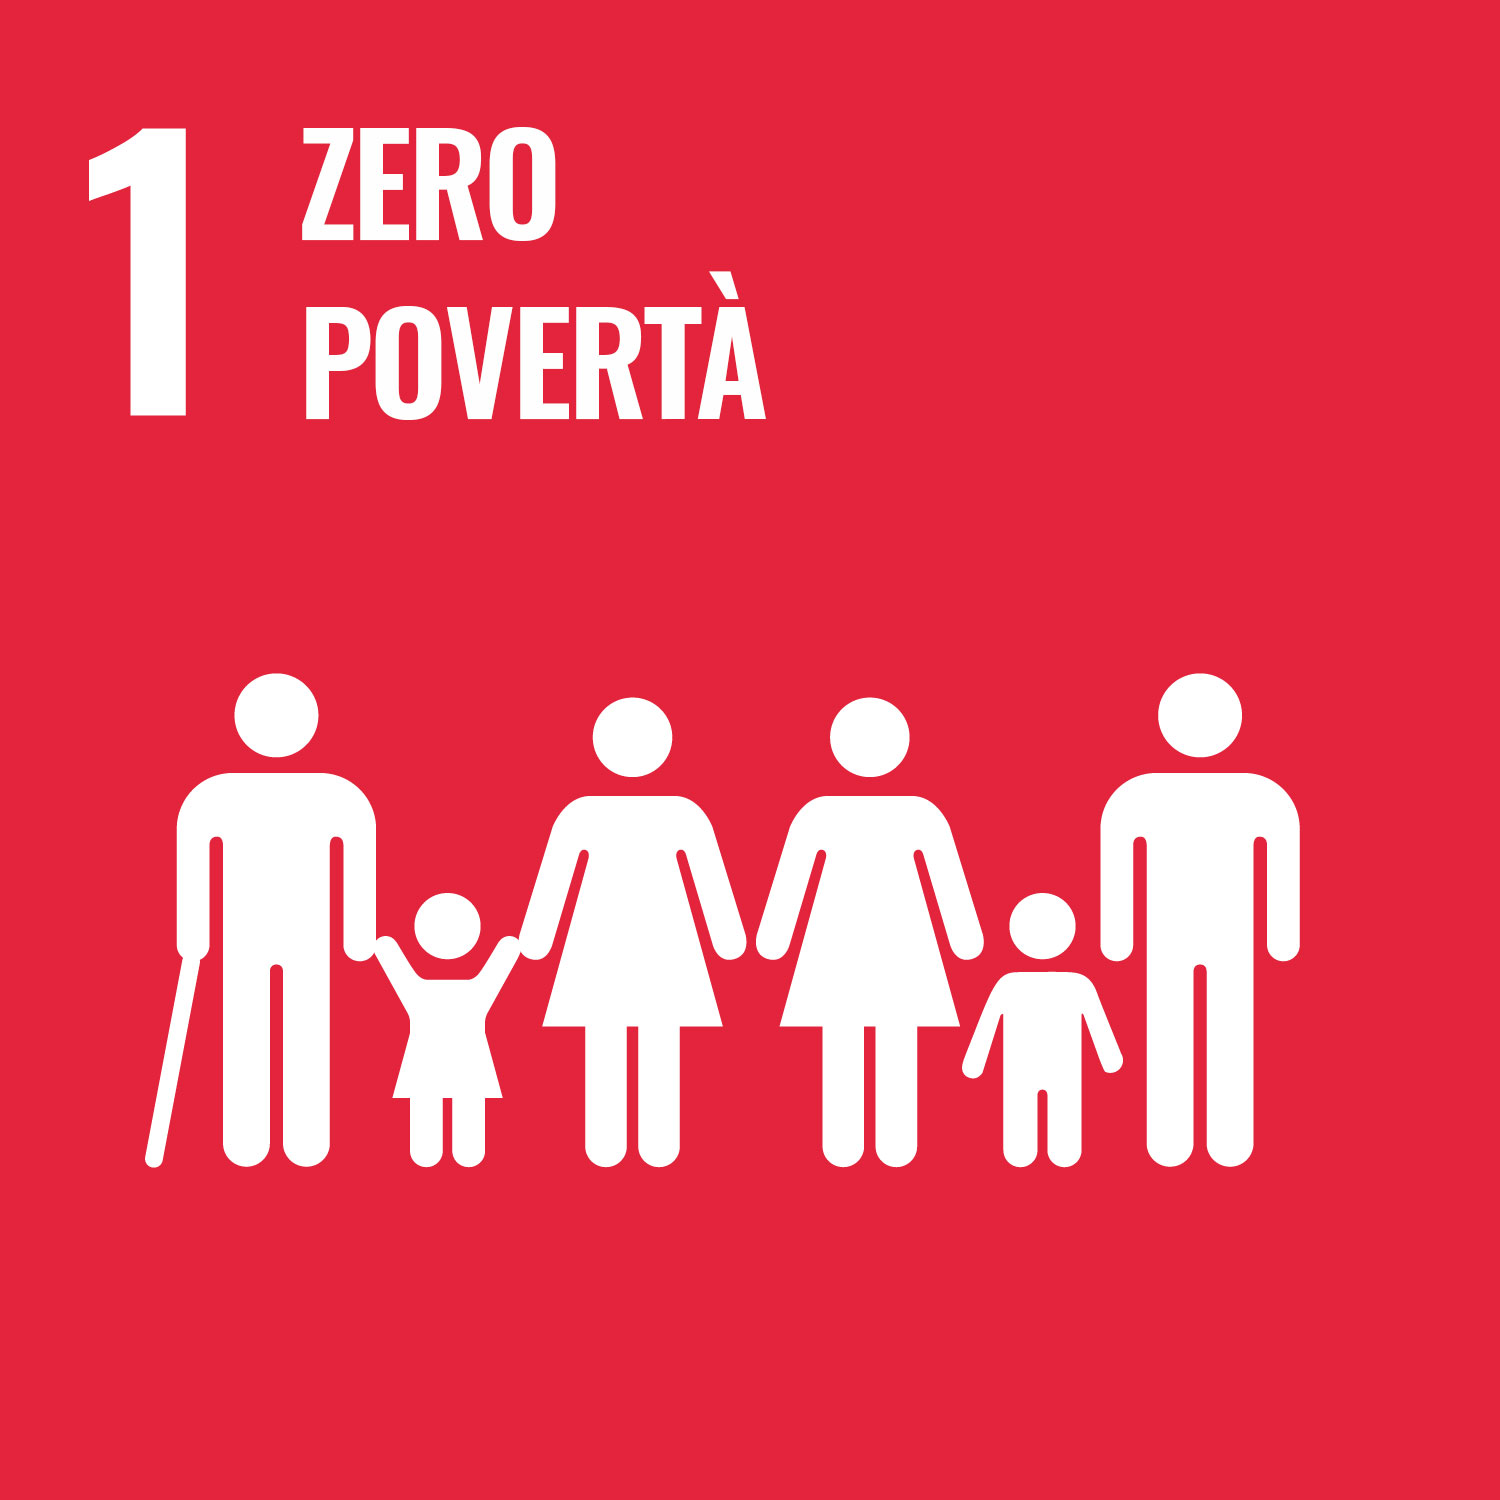 1. Zero Povertà